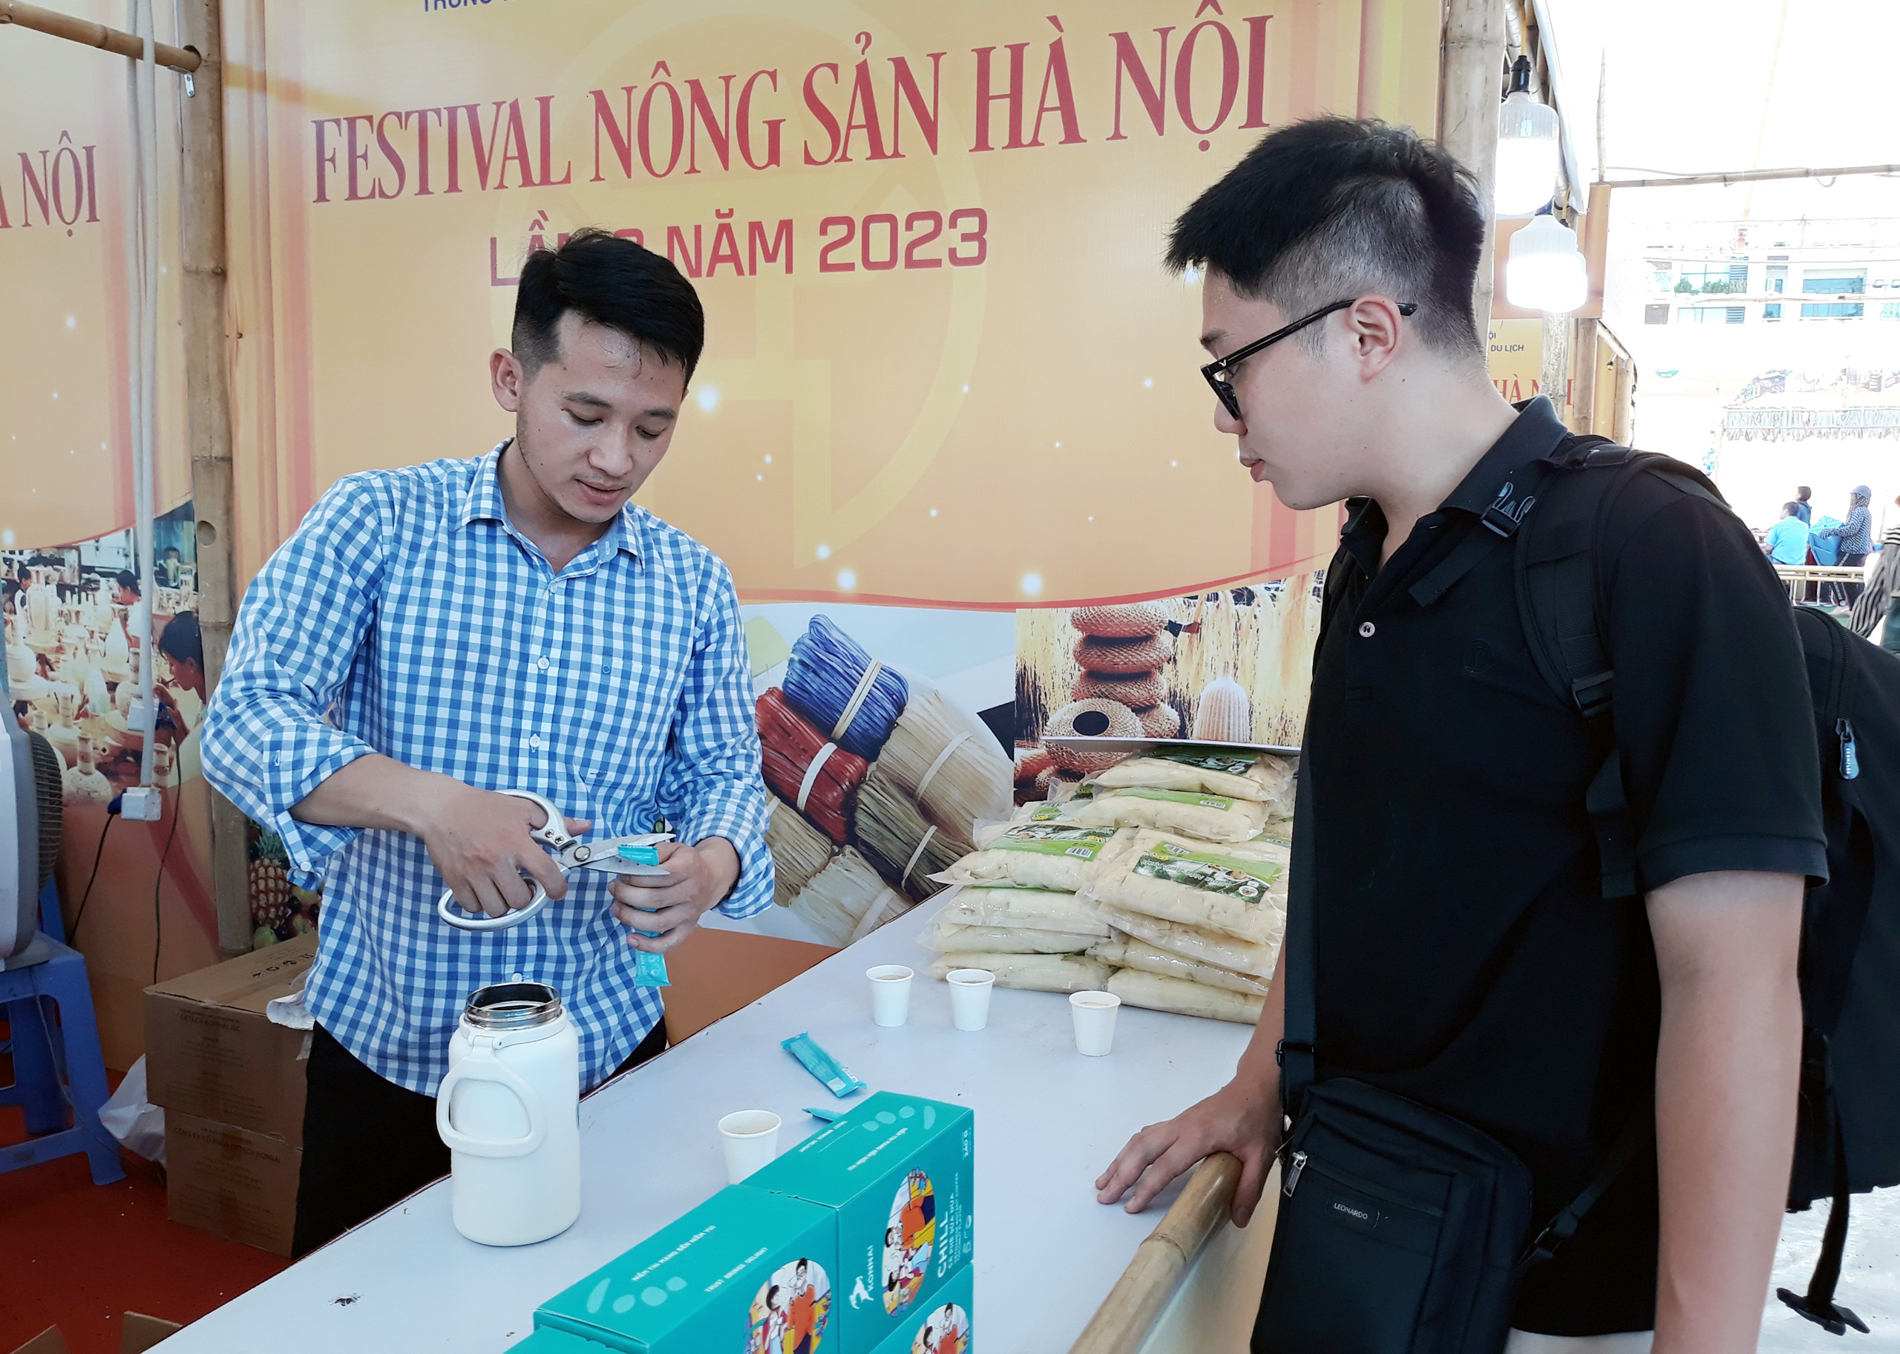 20 tỉnh thành tham gia Festival nông sản Hà Nội lần 2 năm 2023 - Ảnh 2.